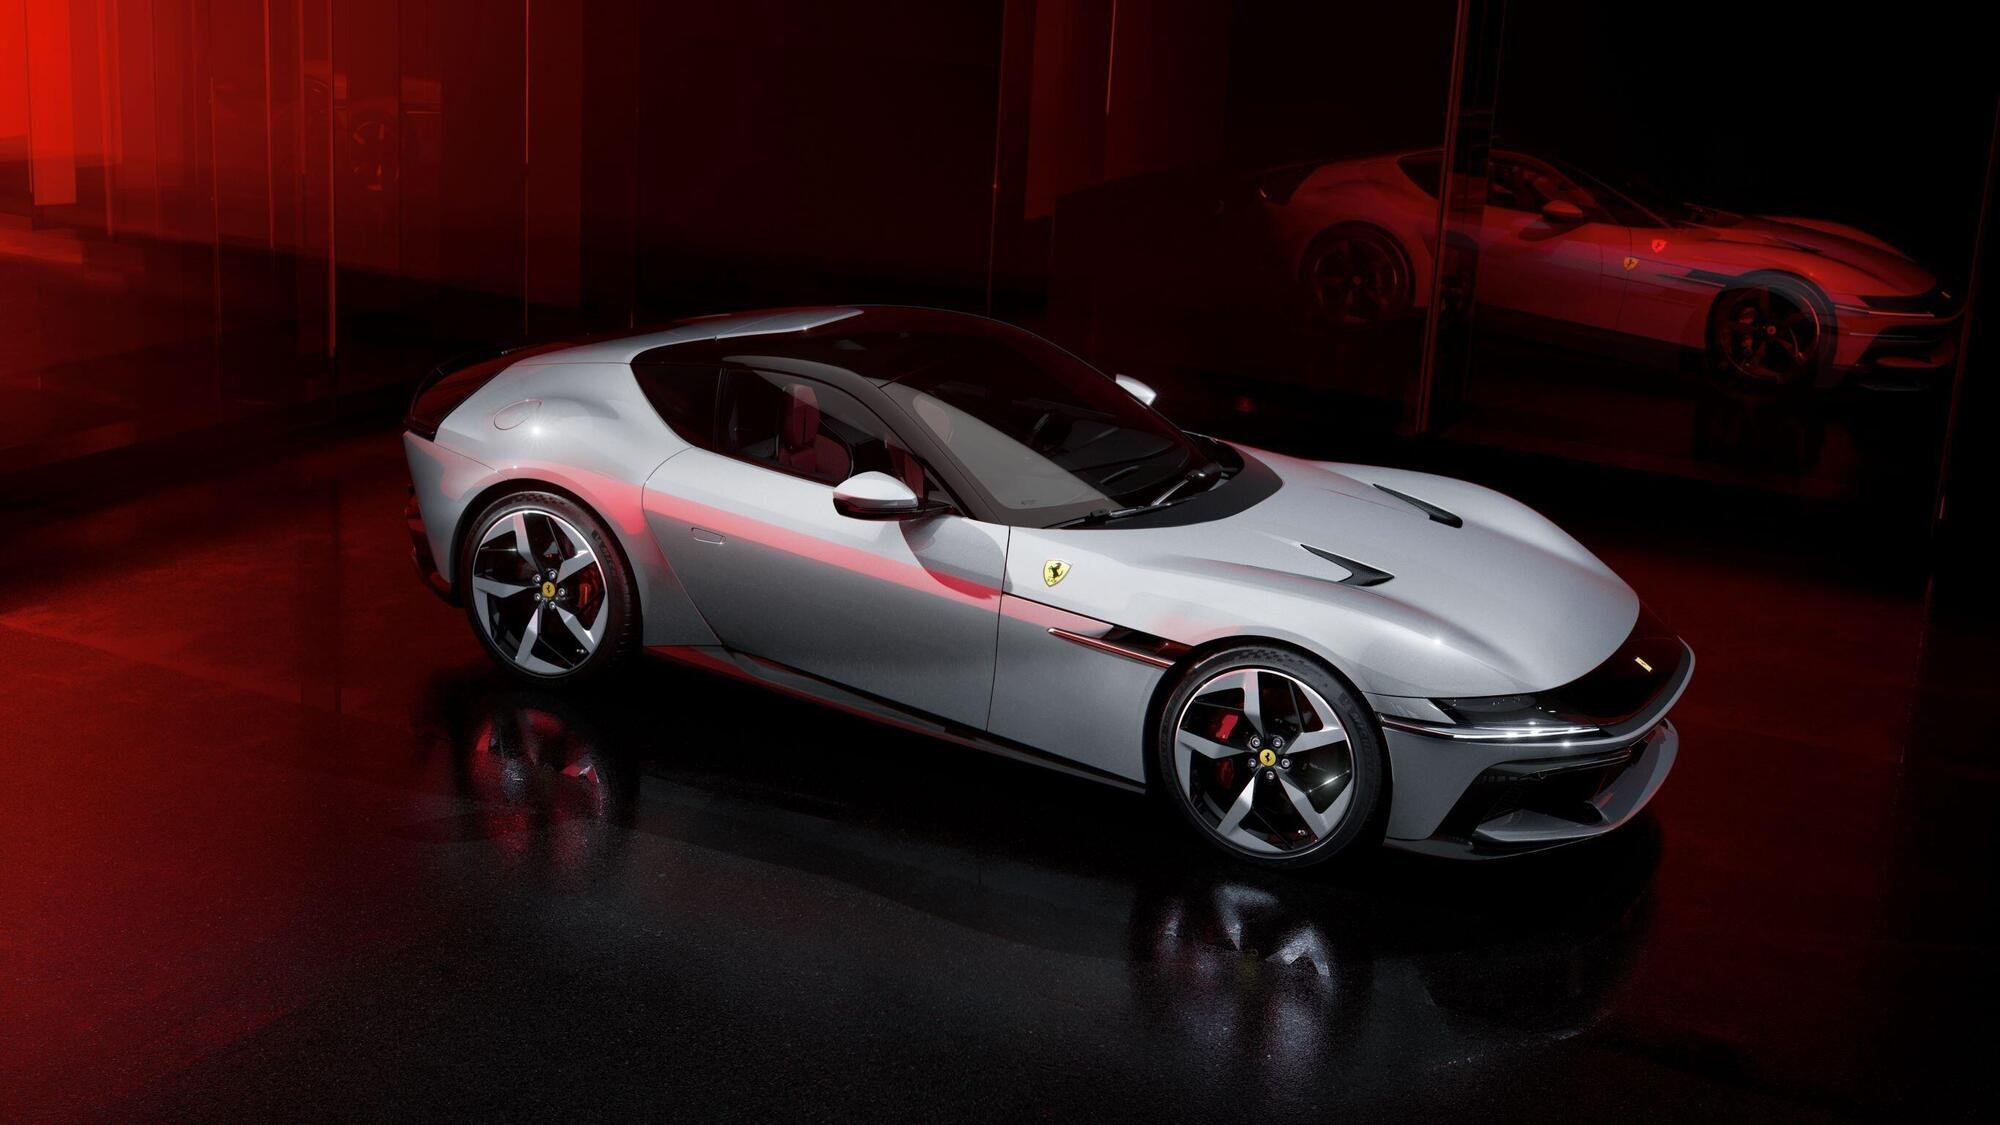 Ferrari 12Cilindri: motore aspirato 12 cilindri da 830 cavalli, con guizzi di Daytona